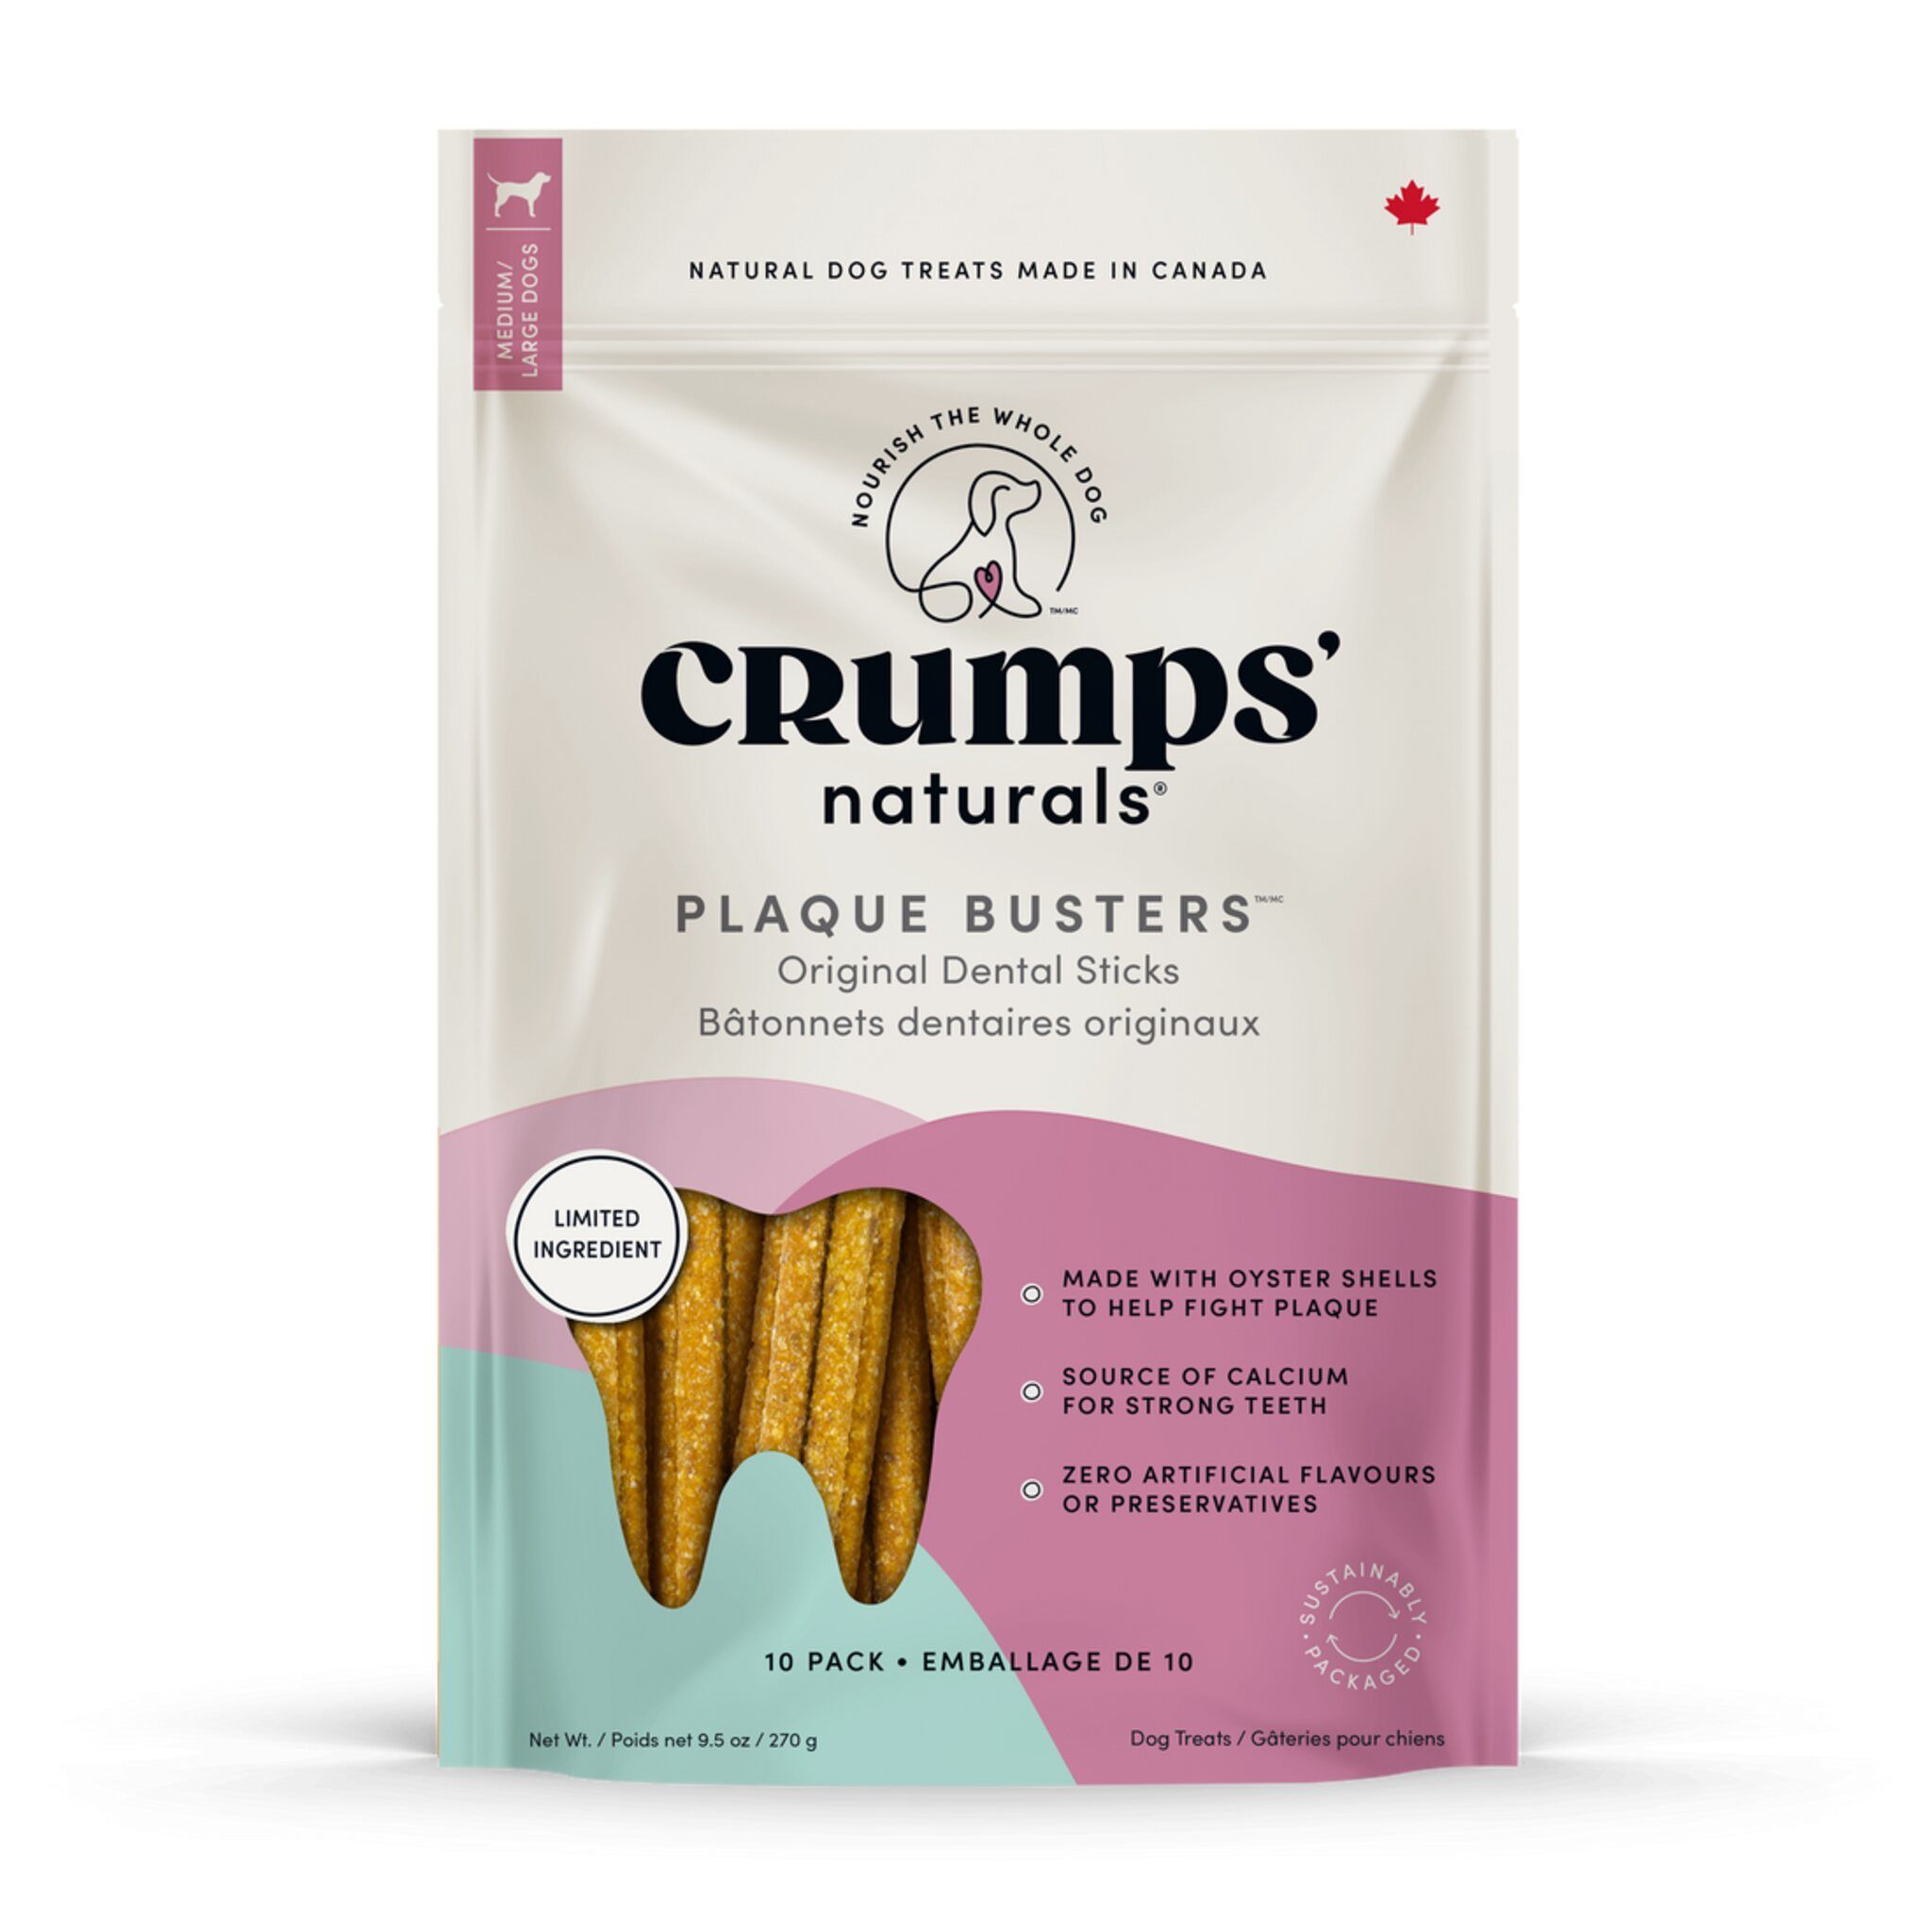 Crumps' Naturals Plaque Buster 7" Original 10 pack Dog Treats